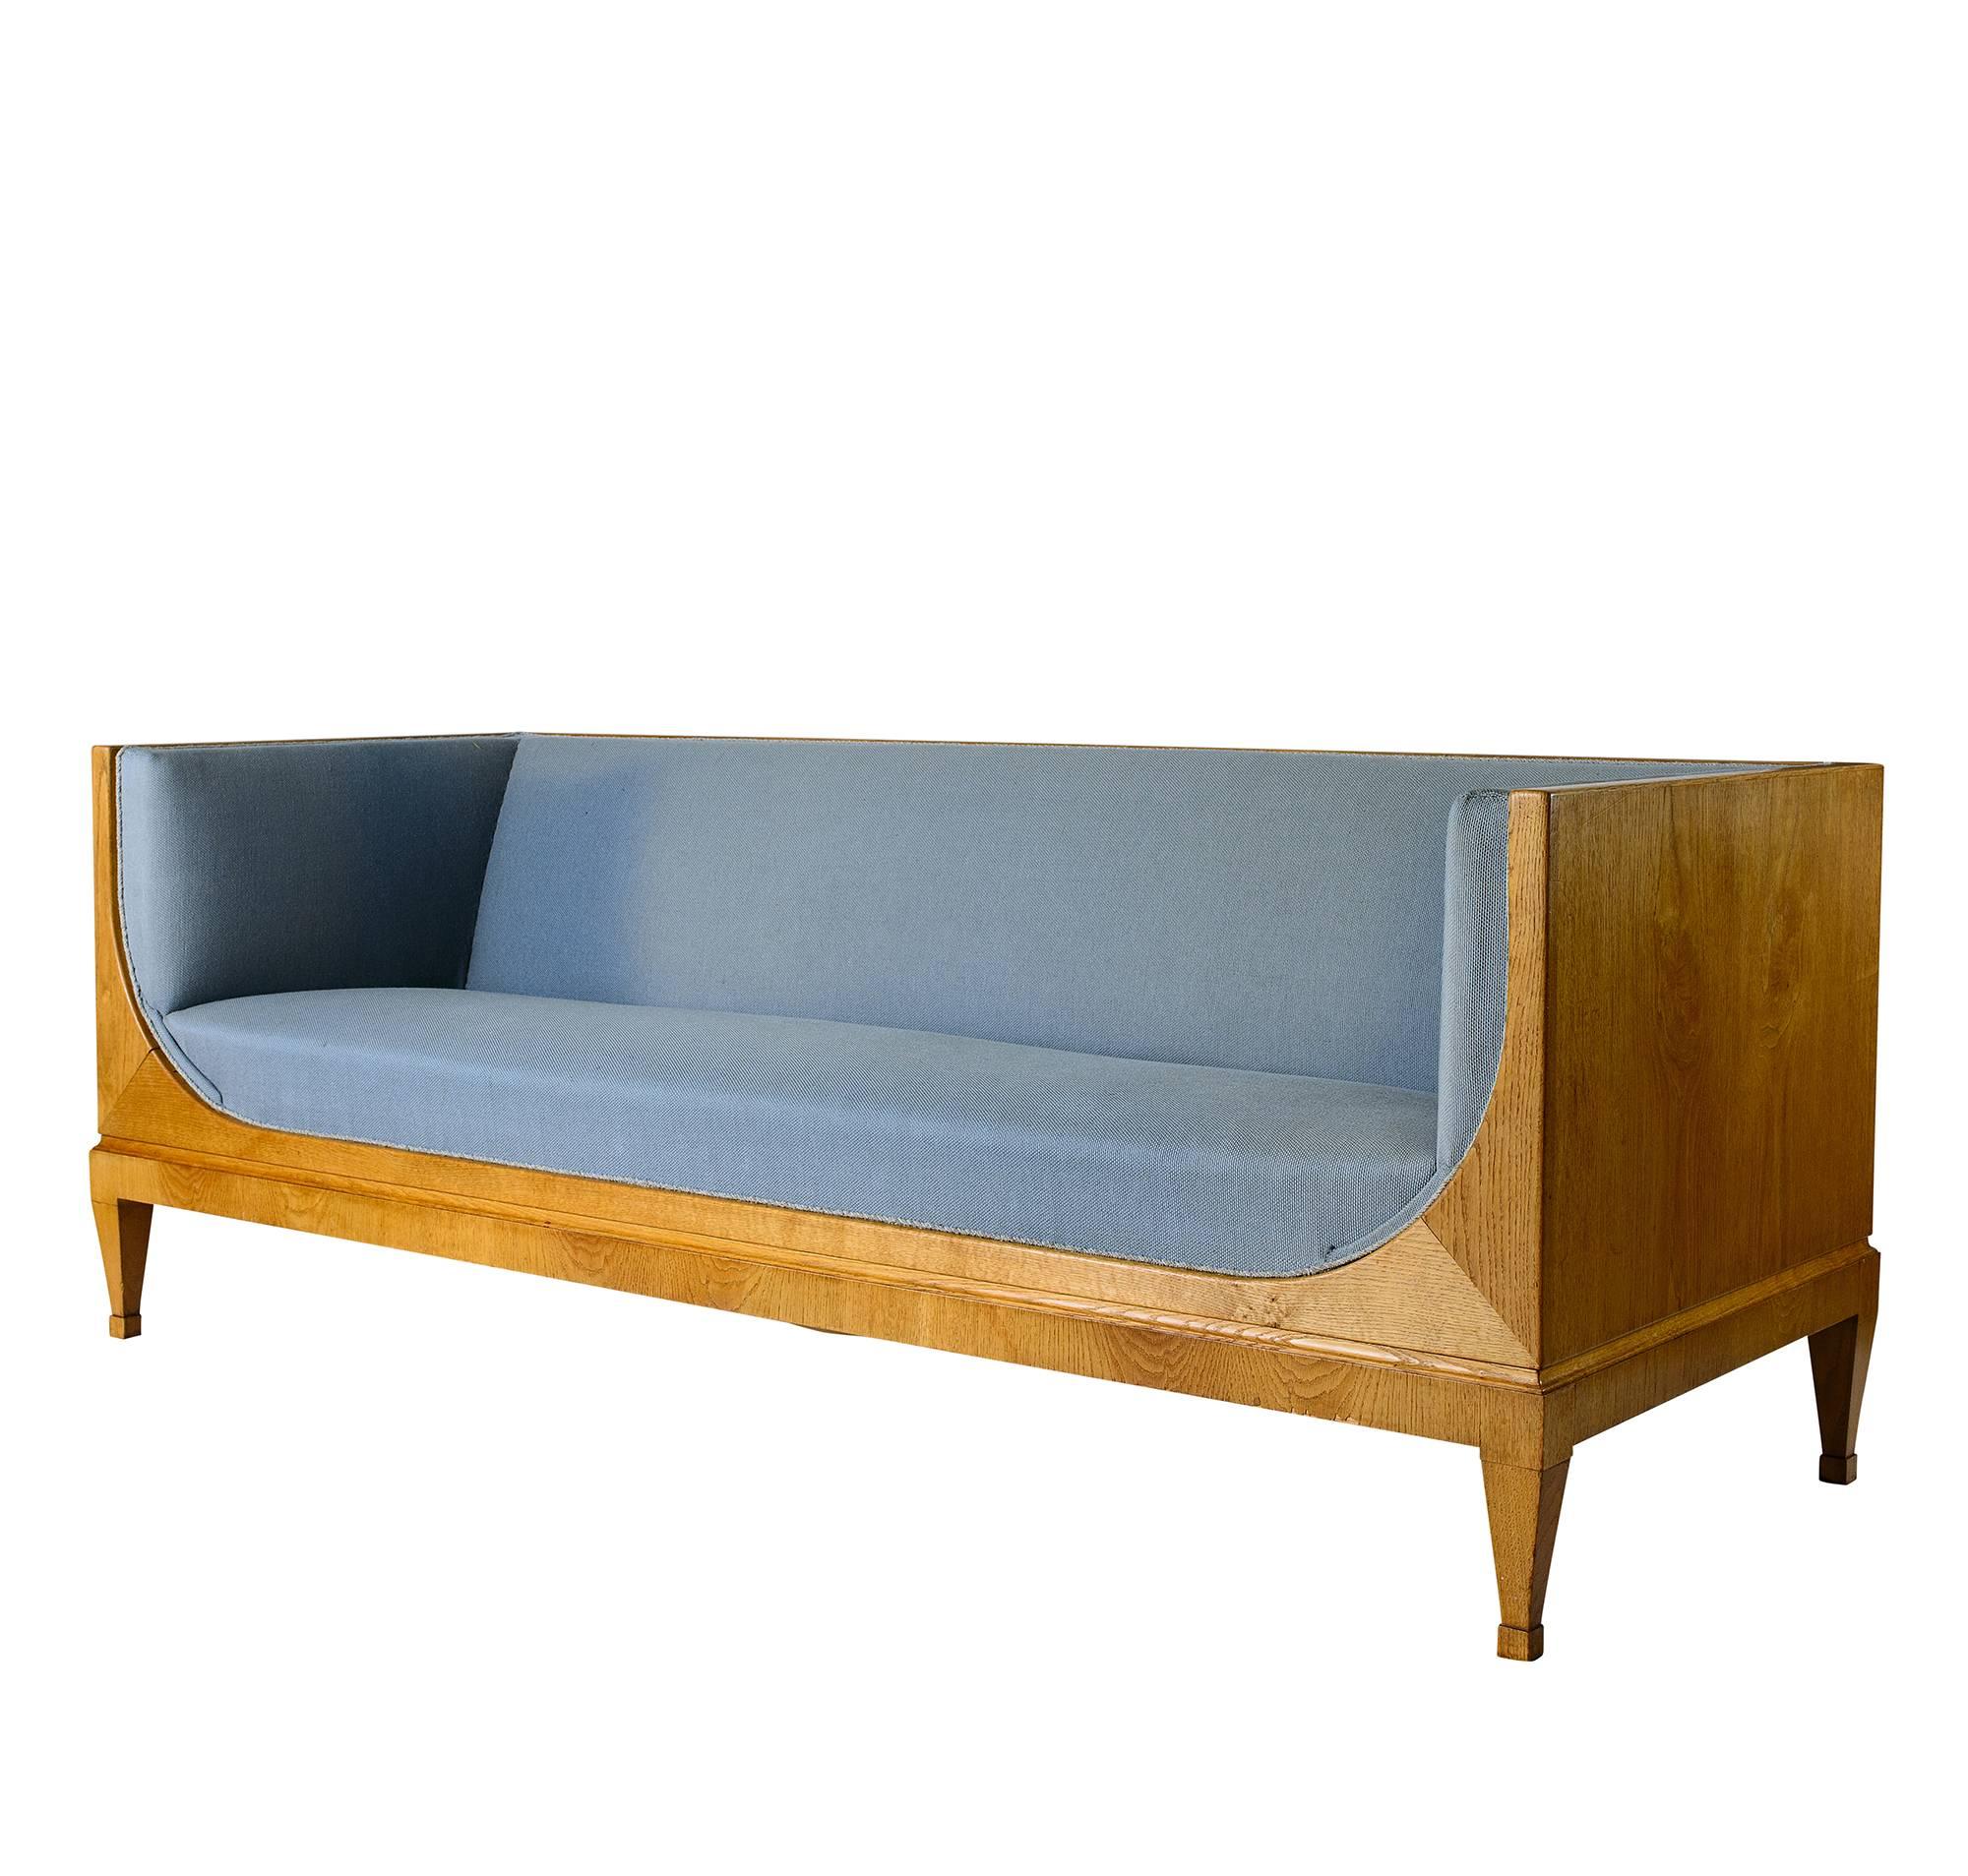 Sofa von Frits Henningsen. Dies ist das erste Mal, dass ich eines dieser Sofas mit
eine originell gestaltete Rückseite.